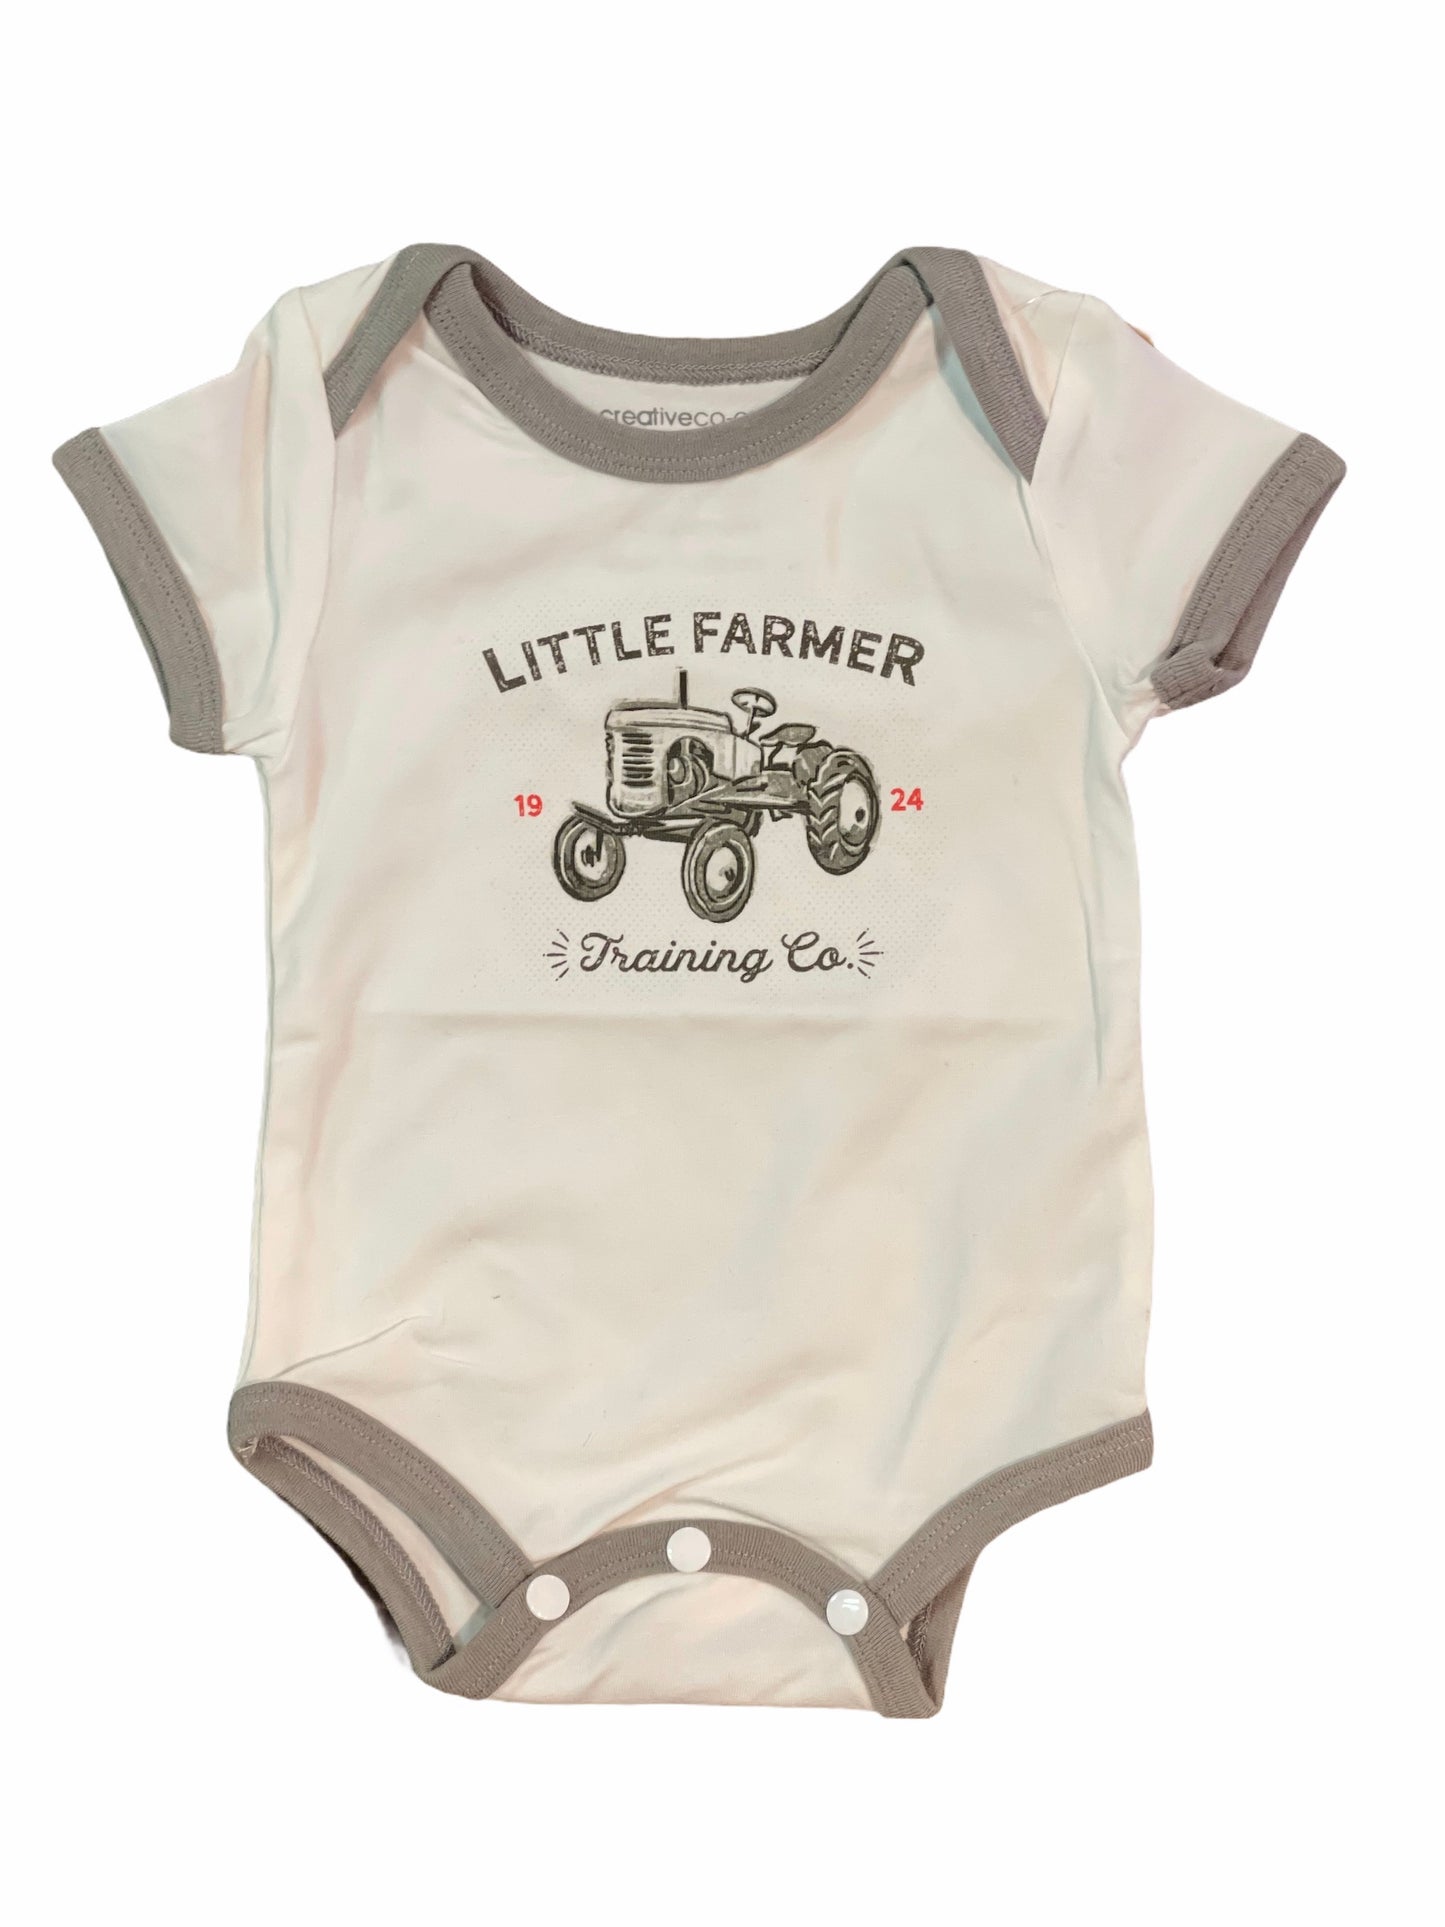 Little Farmer Baby Bodysuit